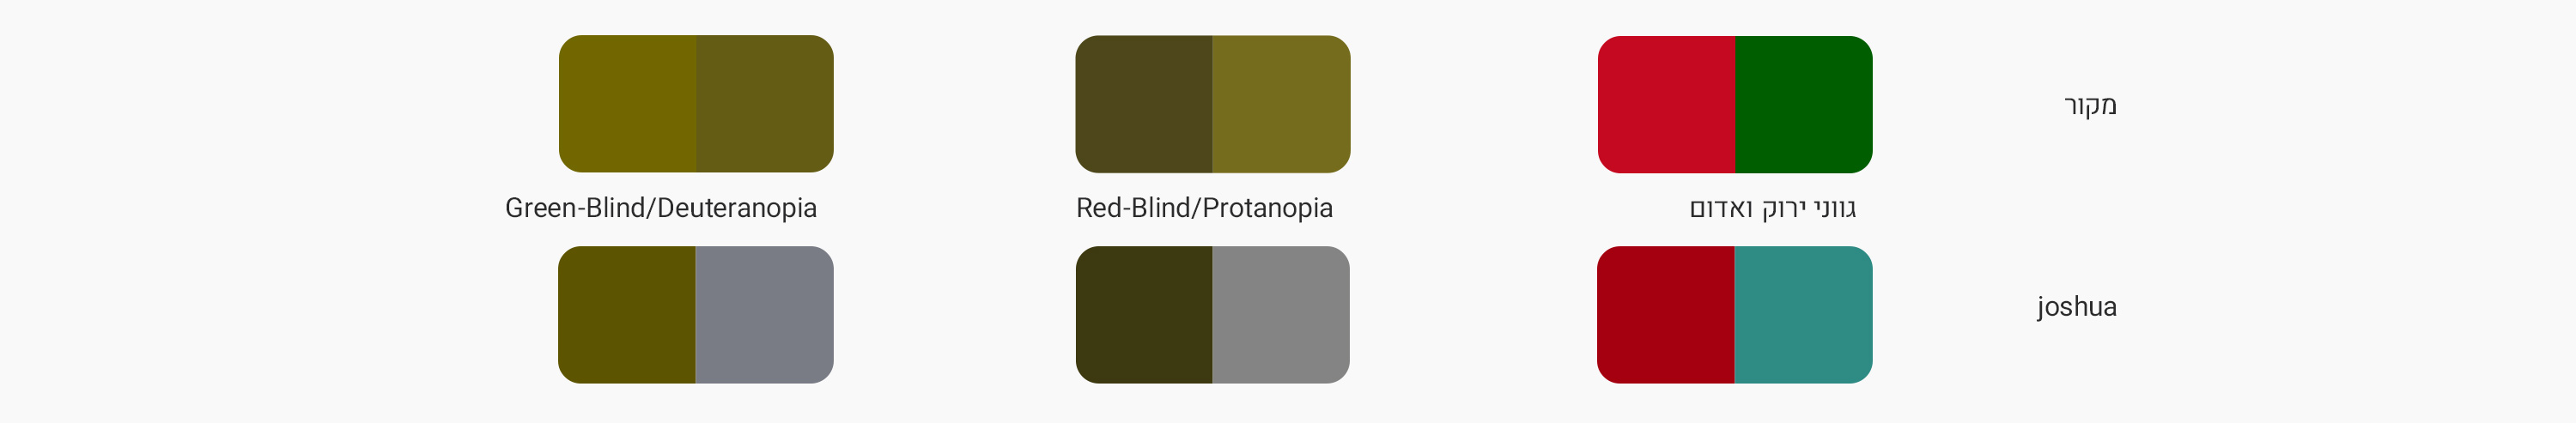 השוואת תצוגת קידודי צבעים בין מצב נורמלי למצבי עיוורון לירוק ועיוורון לאדום